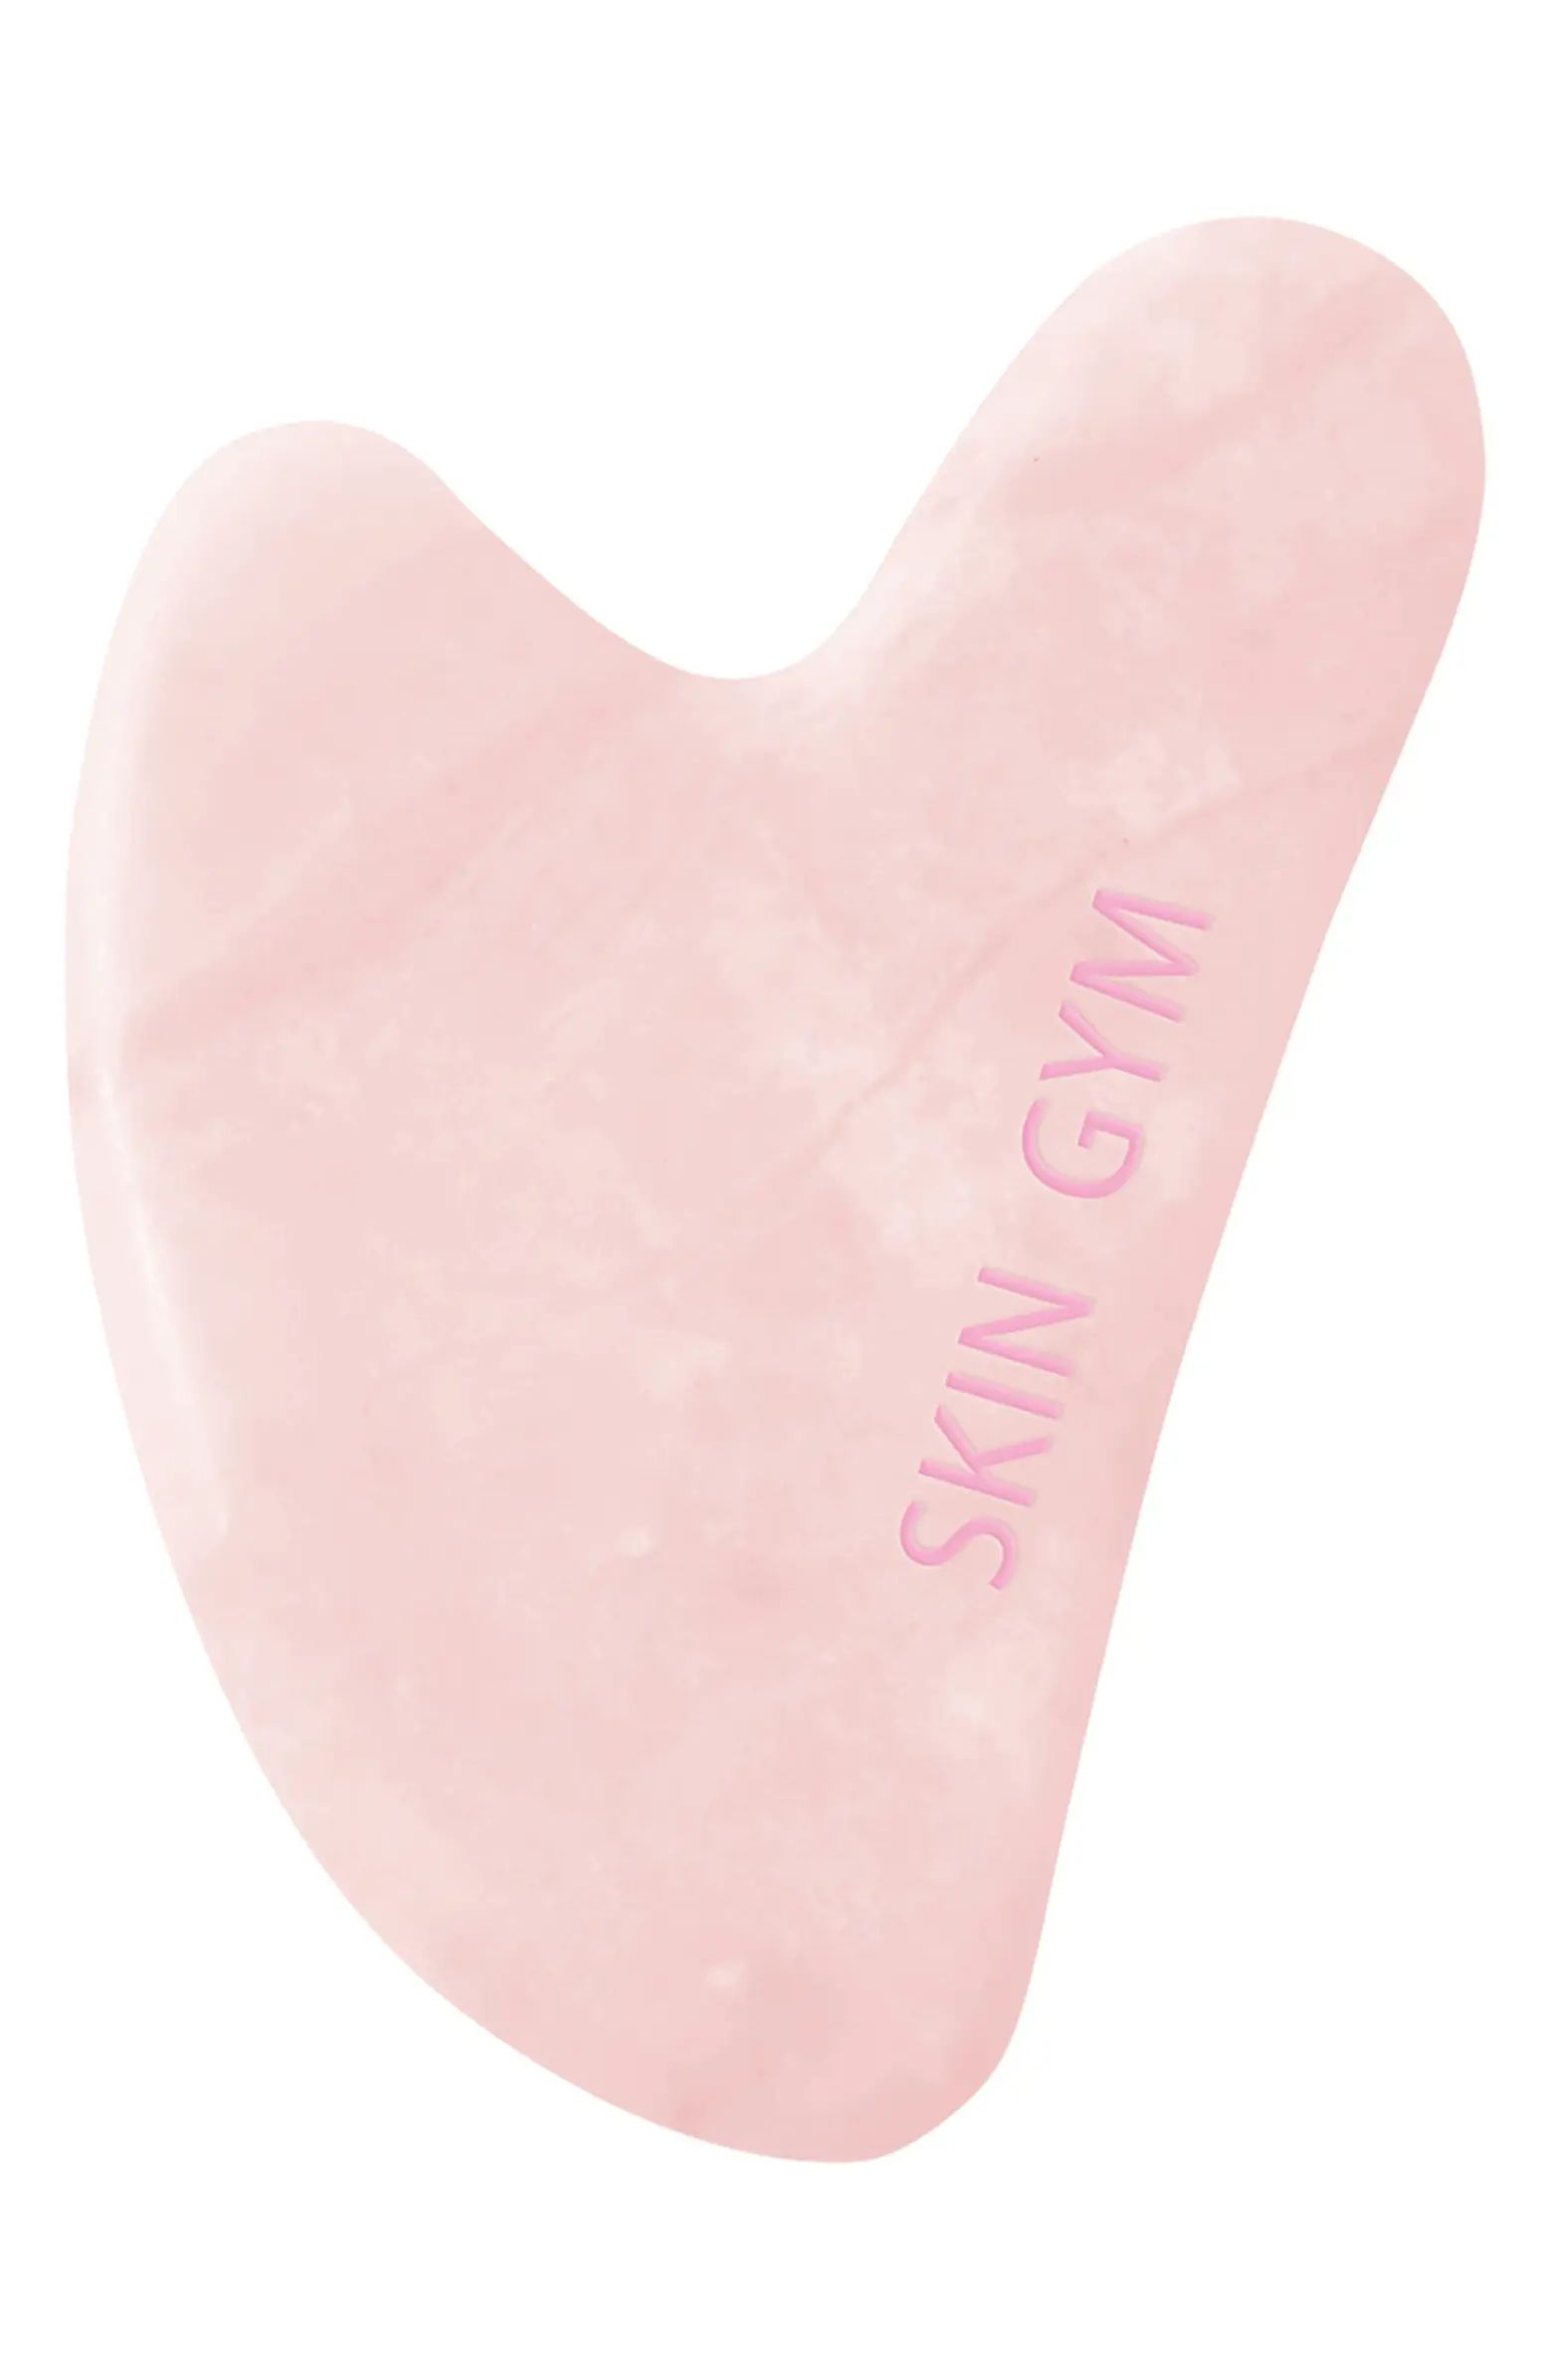 Rose Quartz Crystal Sculpty Heart Gua Sha Facial Tool | Nordstrom